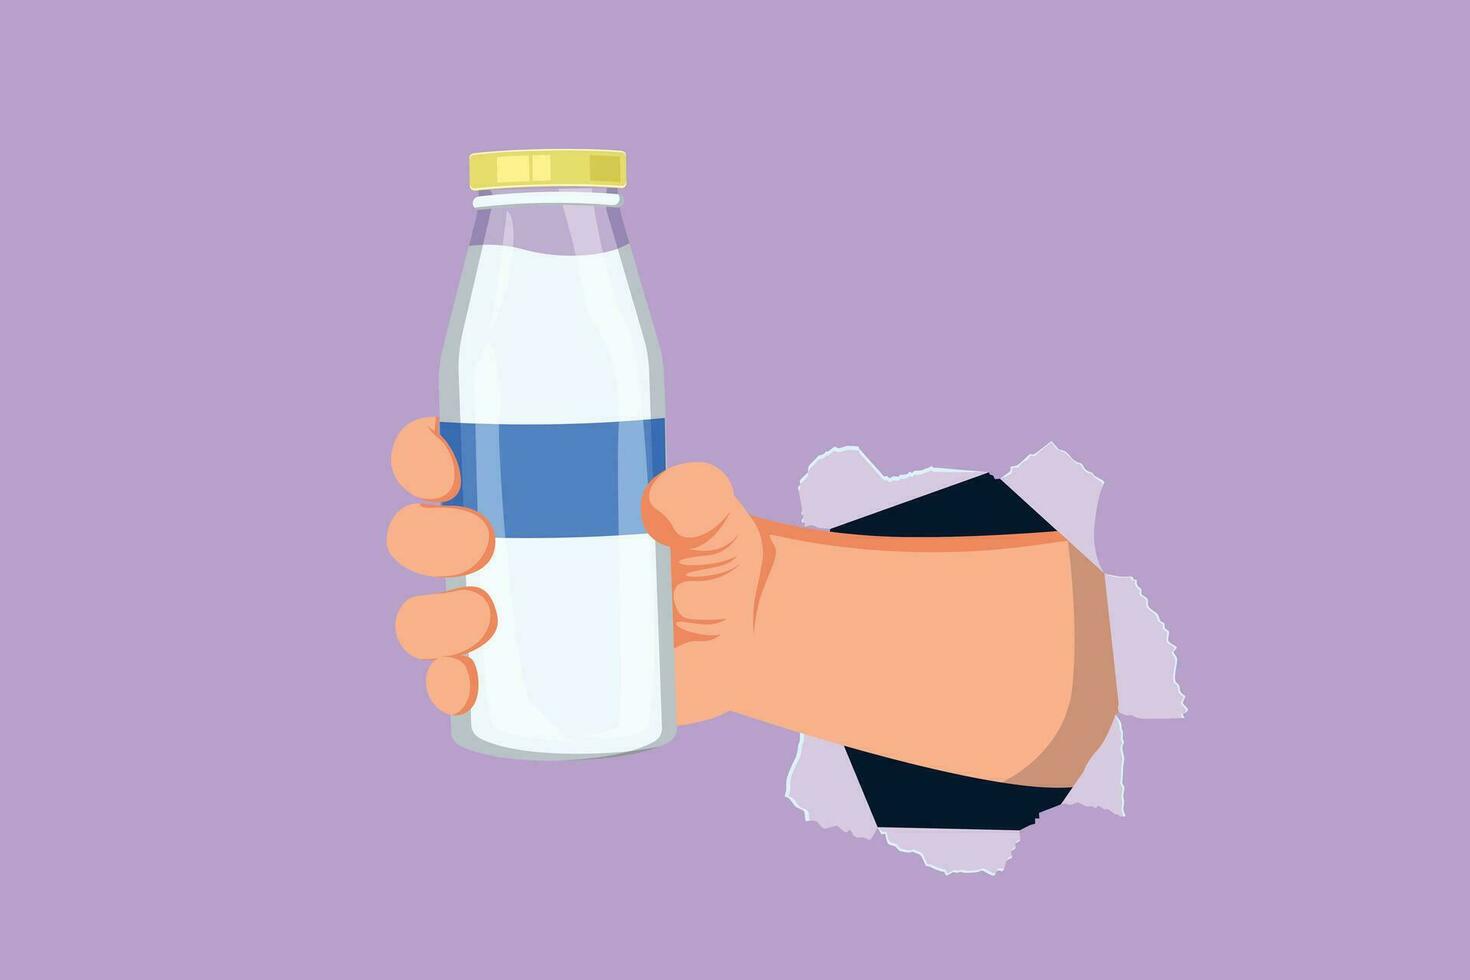 Grafik eben Design Zeichnung Hand halten frisch Milch auf Flasche Glas Verpackung gesund trinken Produkt durch zerrissen Blau Papier oder Loch. frisch Milch zum Gesundheit Essen Logo. Karikatur Stil Vektor Illustration